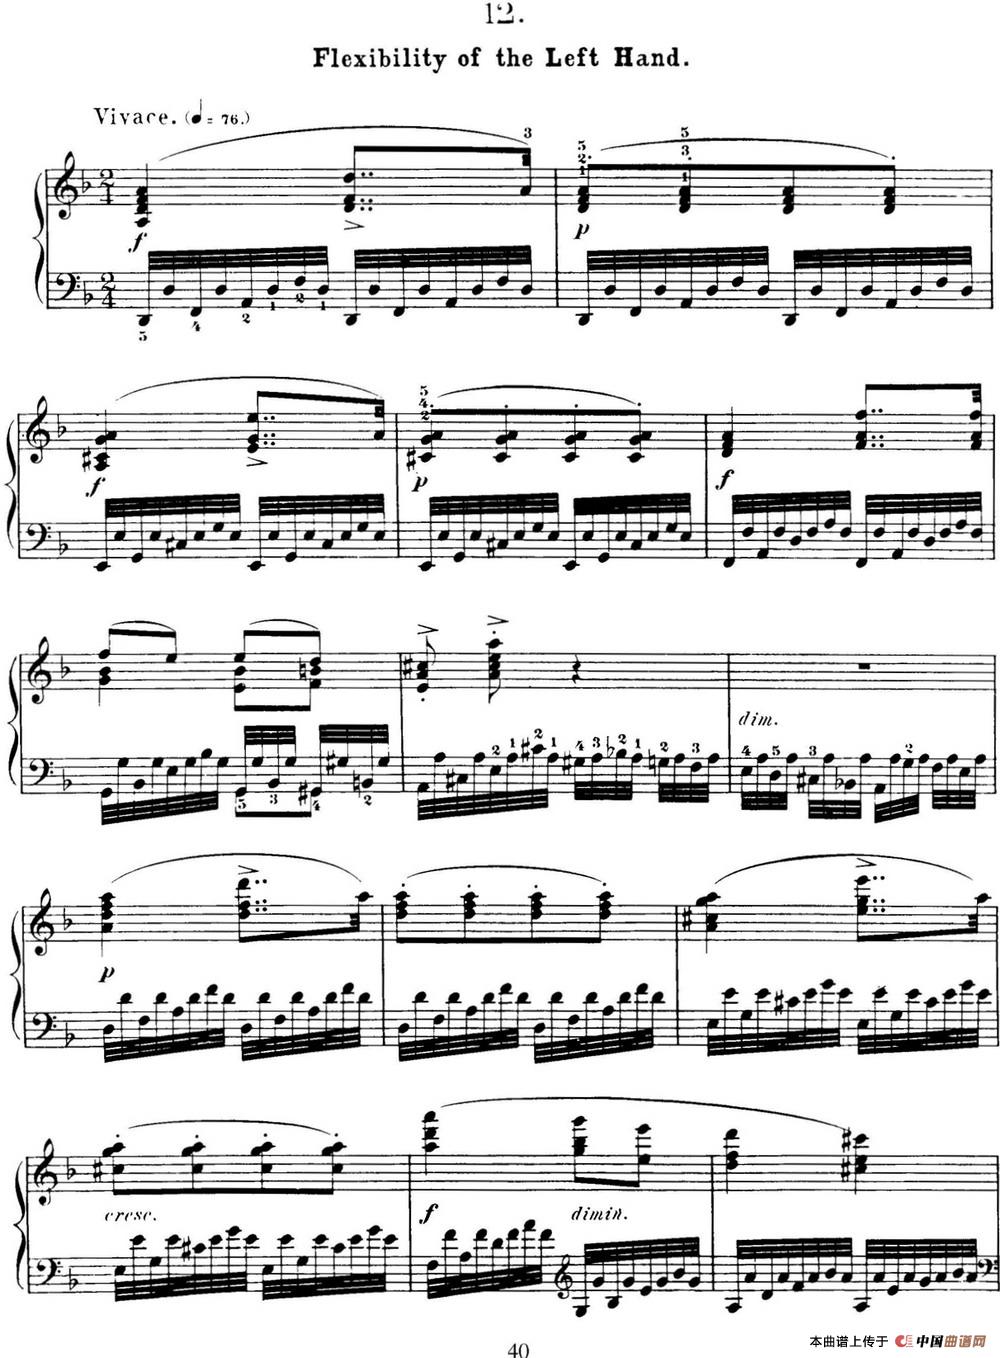 50首车尔尼Op.740钢琴手指灵巧技术练习曲（NO.12）(1)_C740_页面_040.jpg